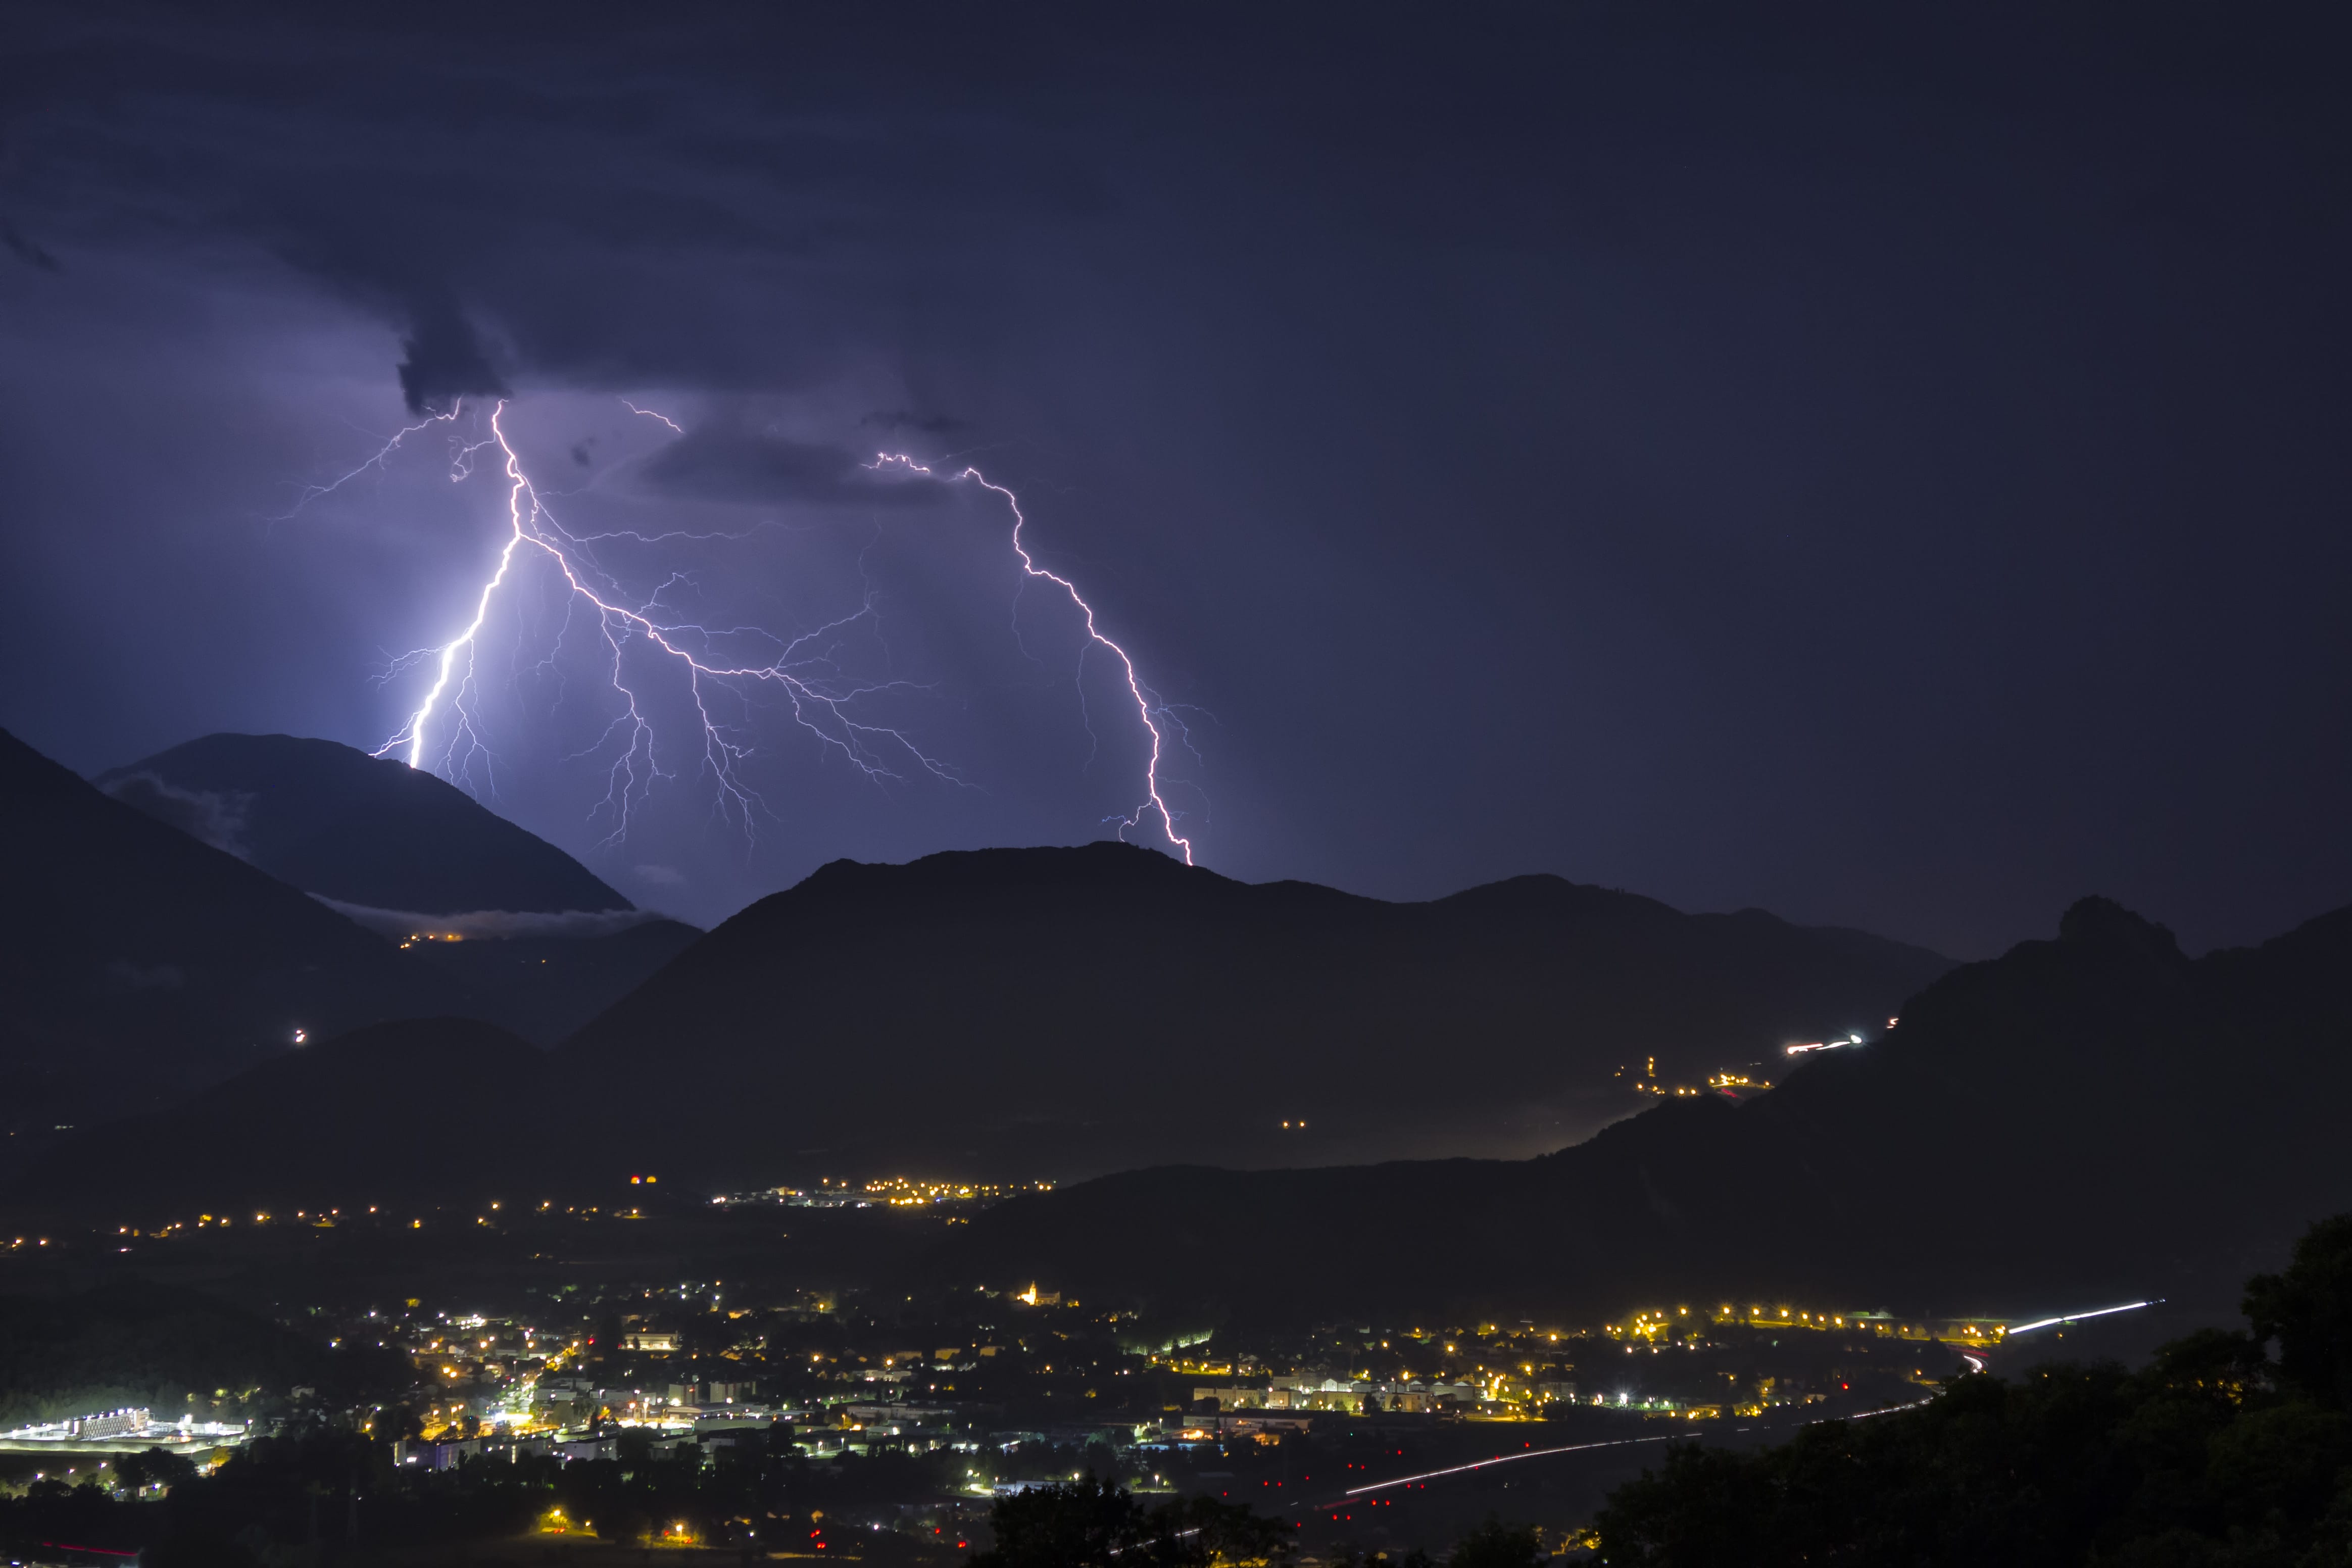 Deuxième cellule orageuse entre 4H30 et 6H toujours le 30 juillet au sud de Grenoble dans le massif de la Matheysine. - 30/07/2021 05:00 - frederic sanchis